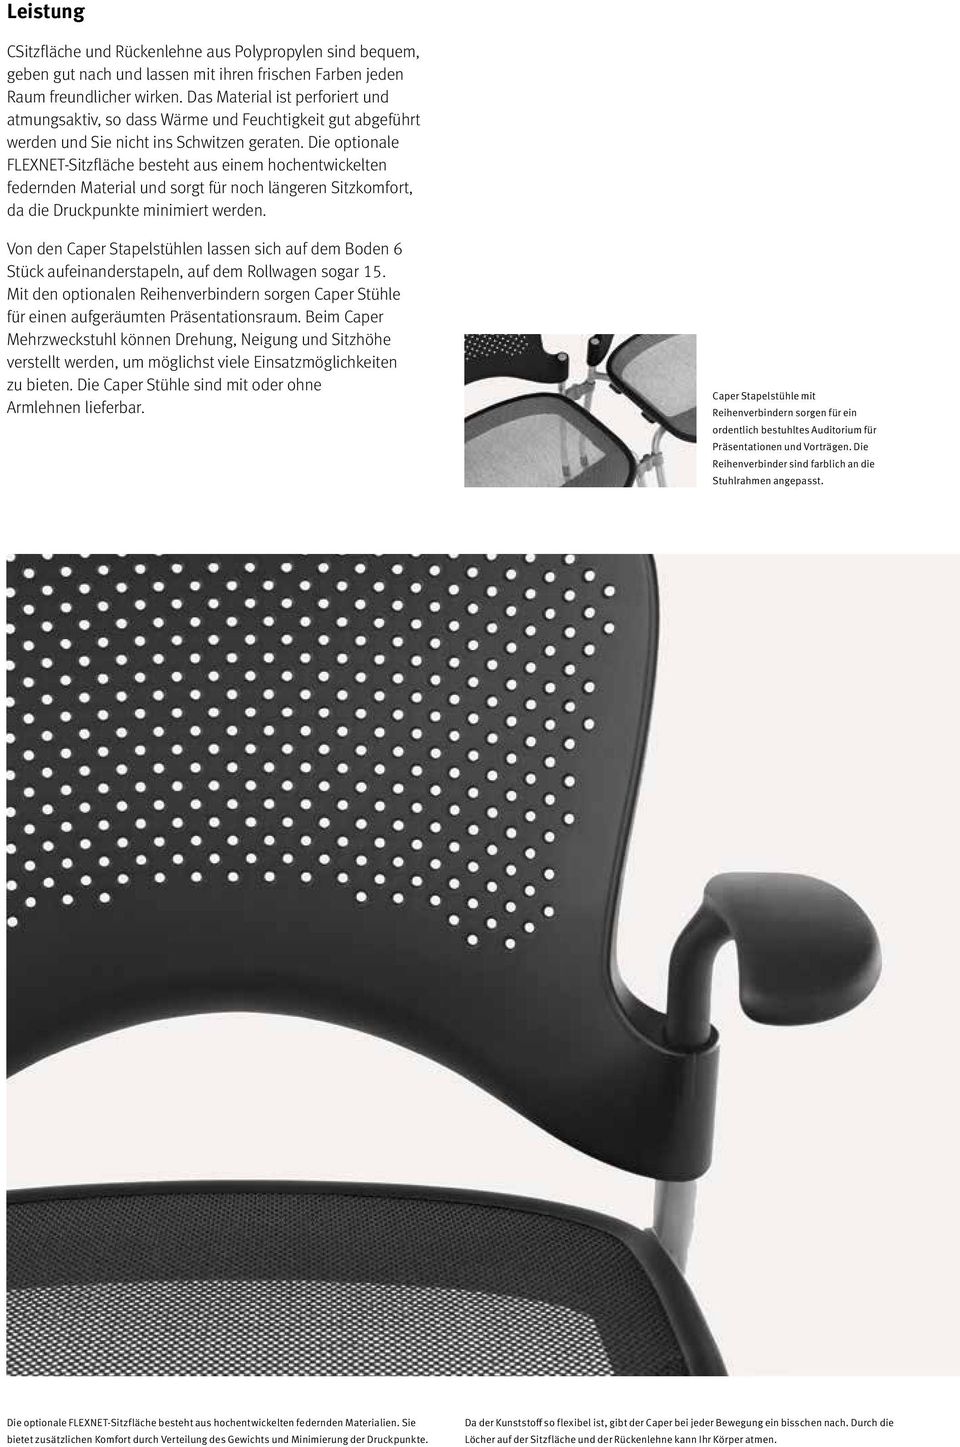 Die optionale FLEXNET-Sitzfläche besteht aus einem hochentwickelten federnden Material und sorgt für noch längeren Sitzkomfort, da die Druckpunkte minimiert werden.